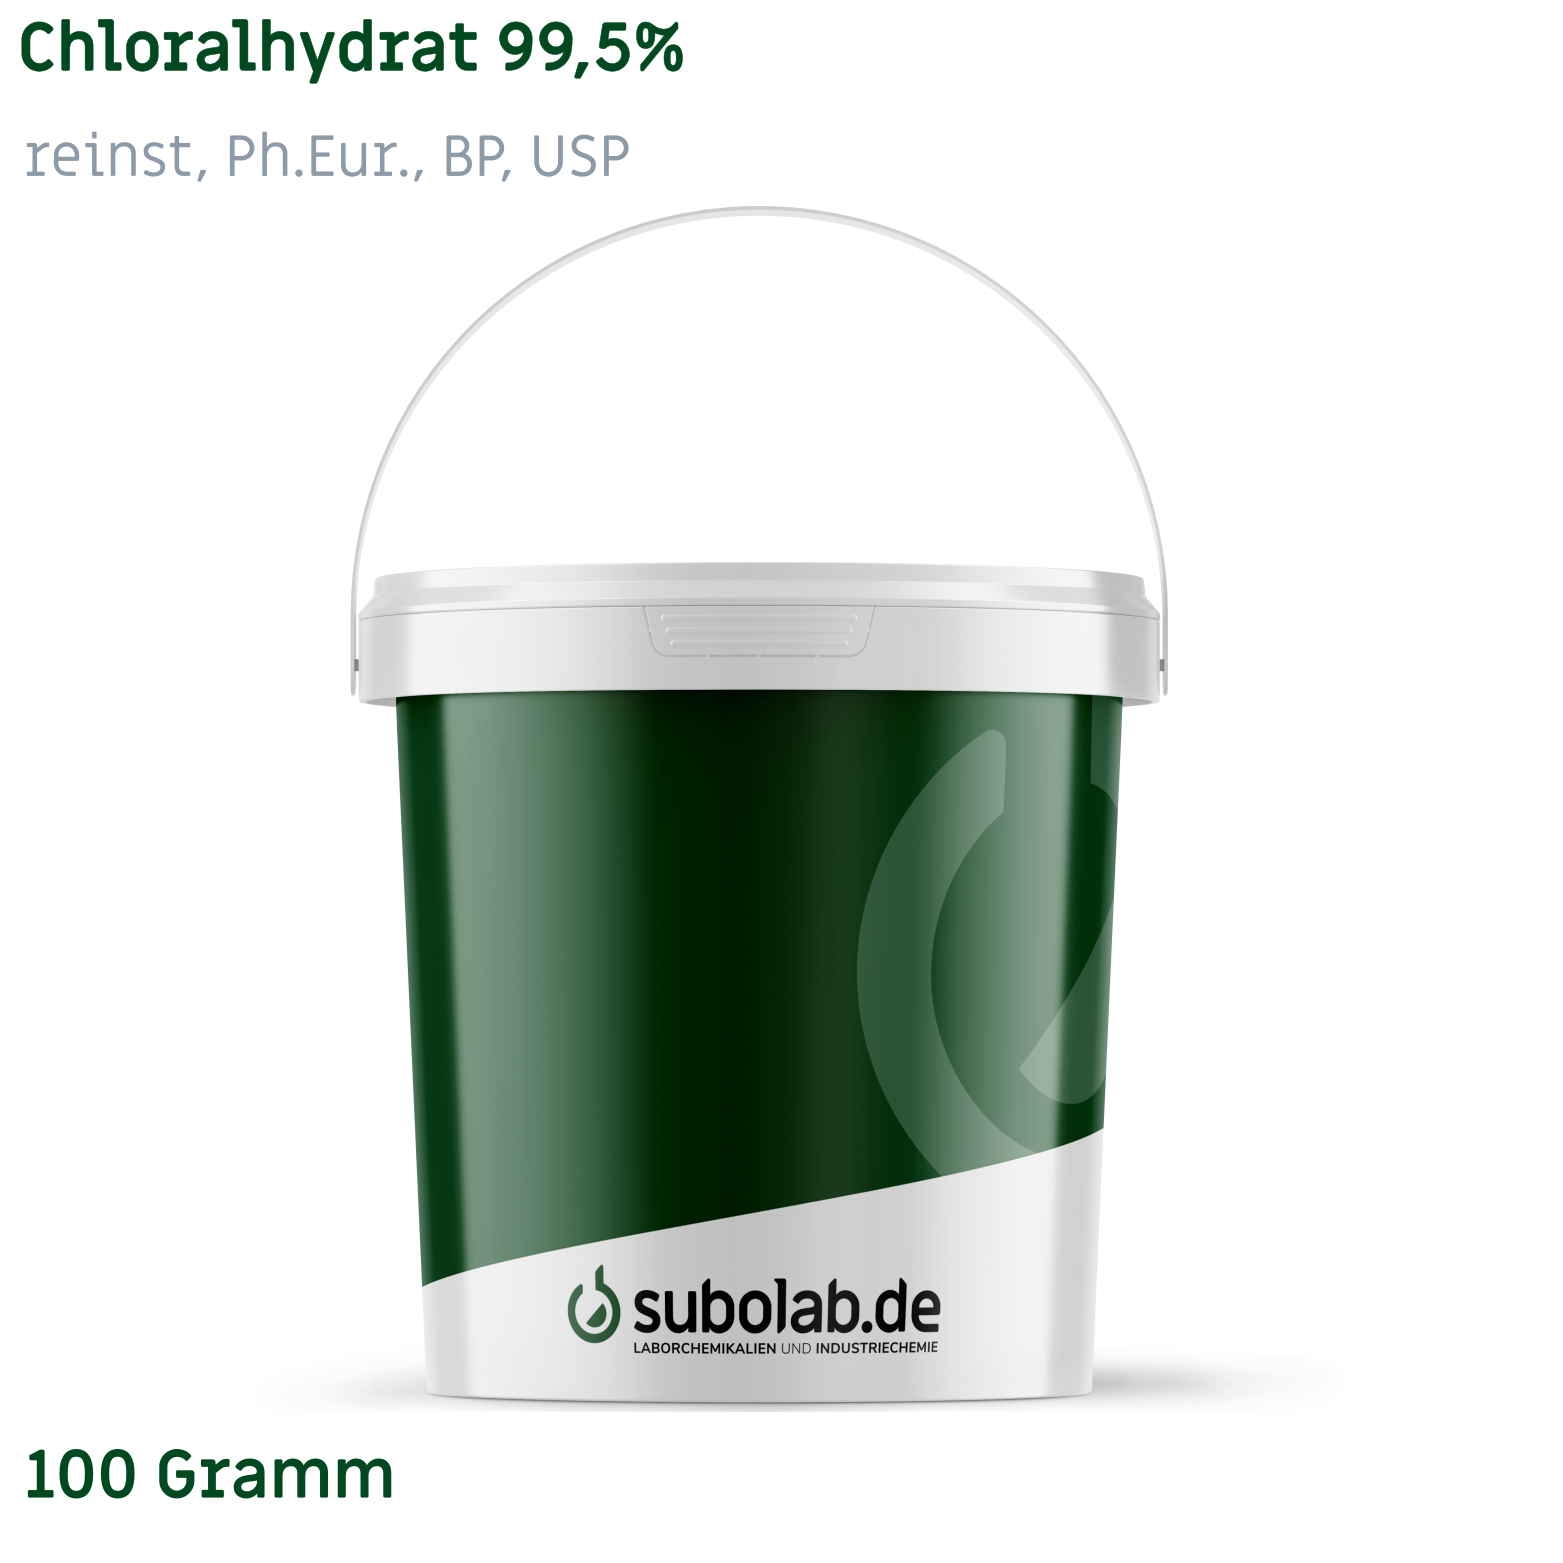 Bild von Chloralhydrat 99,5% reinst, Ph.Eur., BP, USP (100 Gramm)